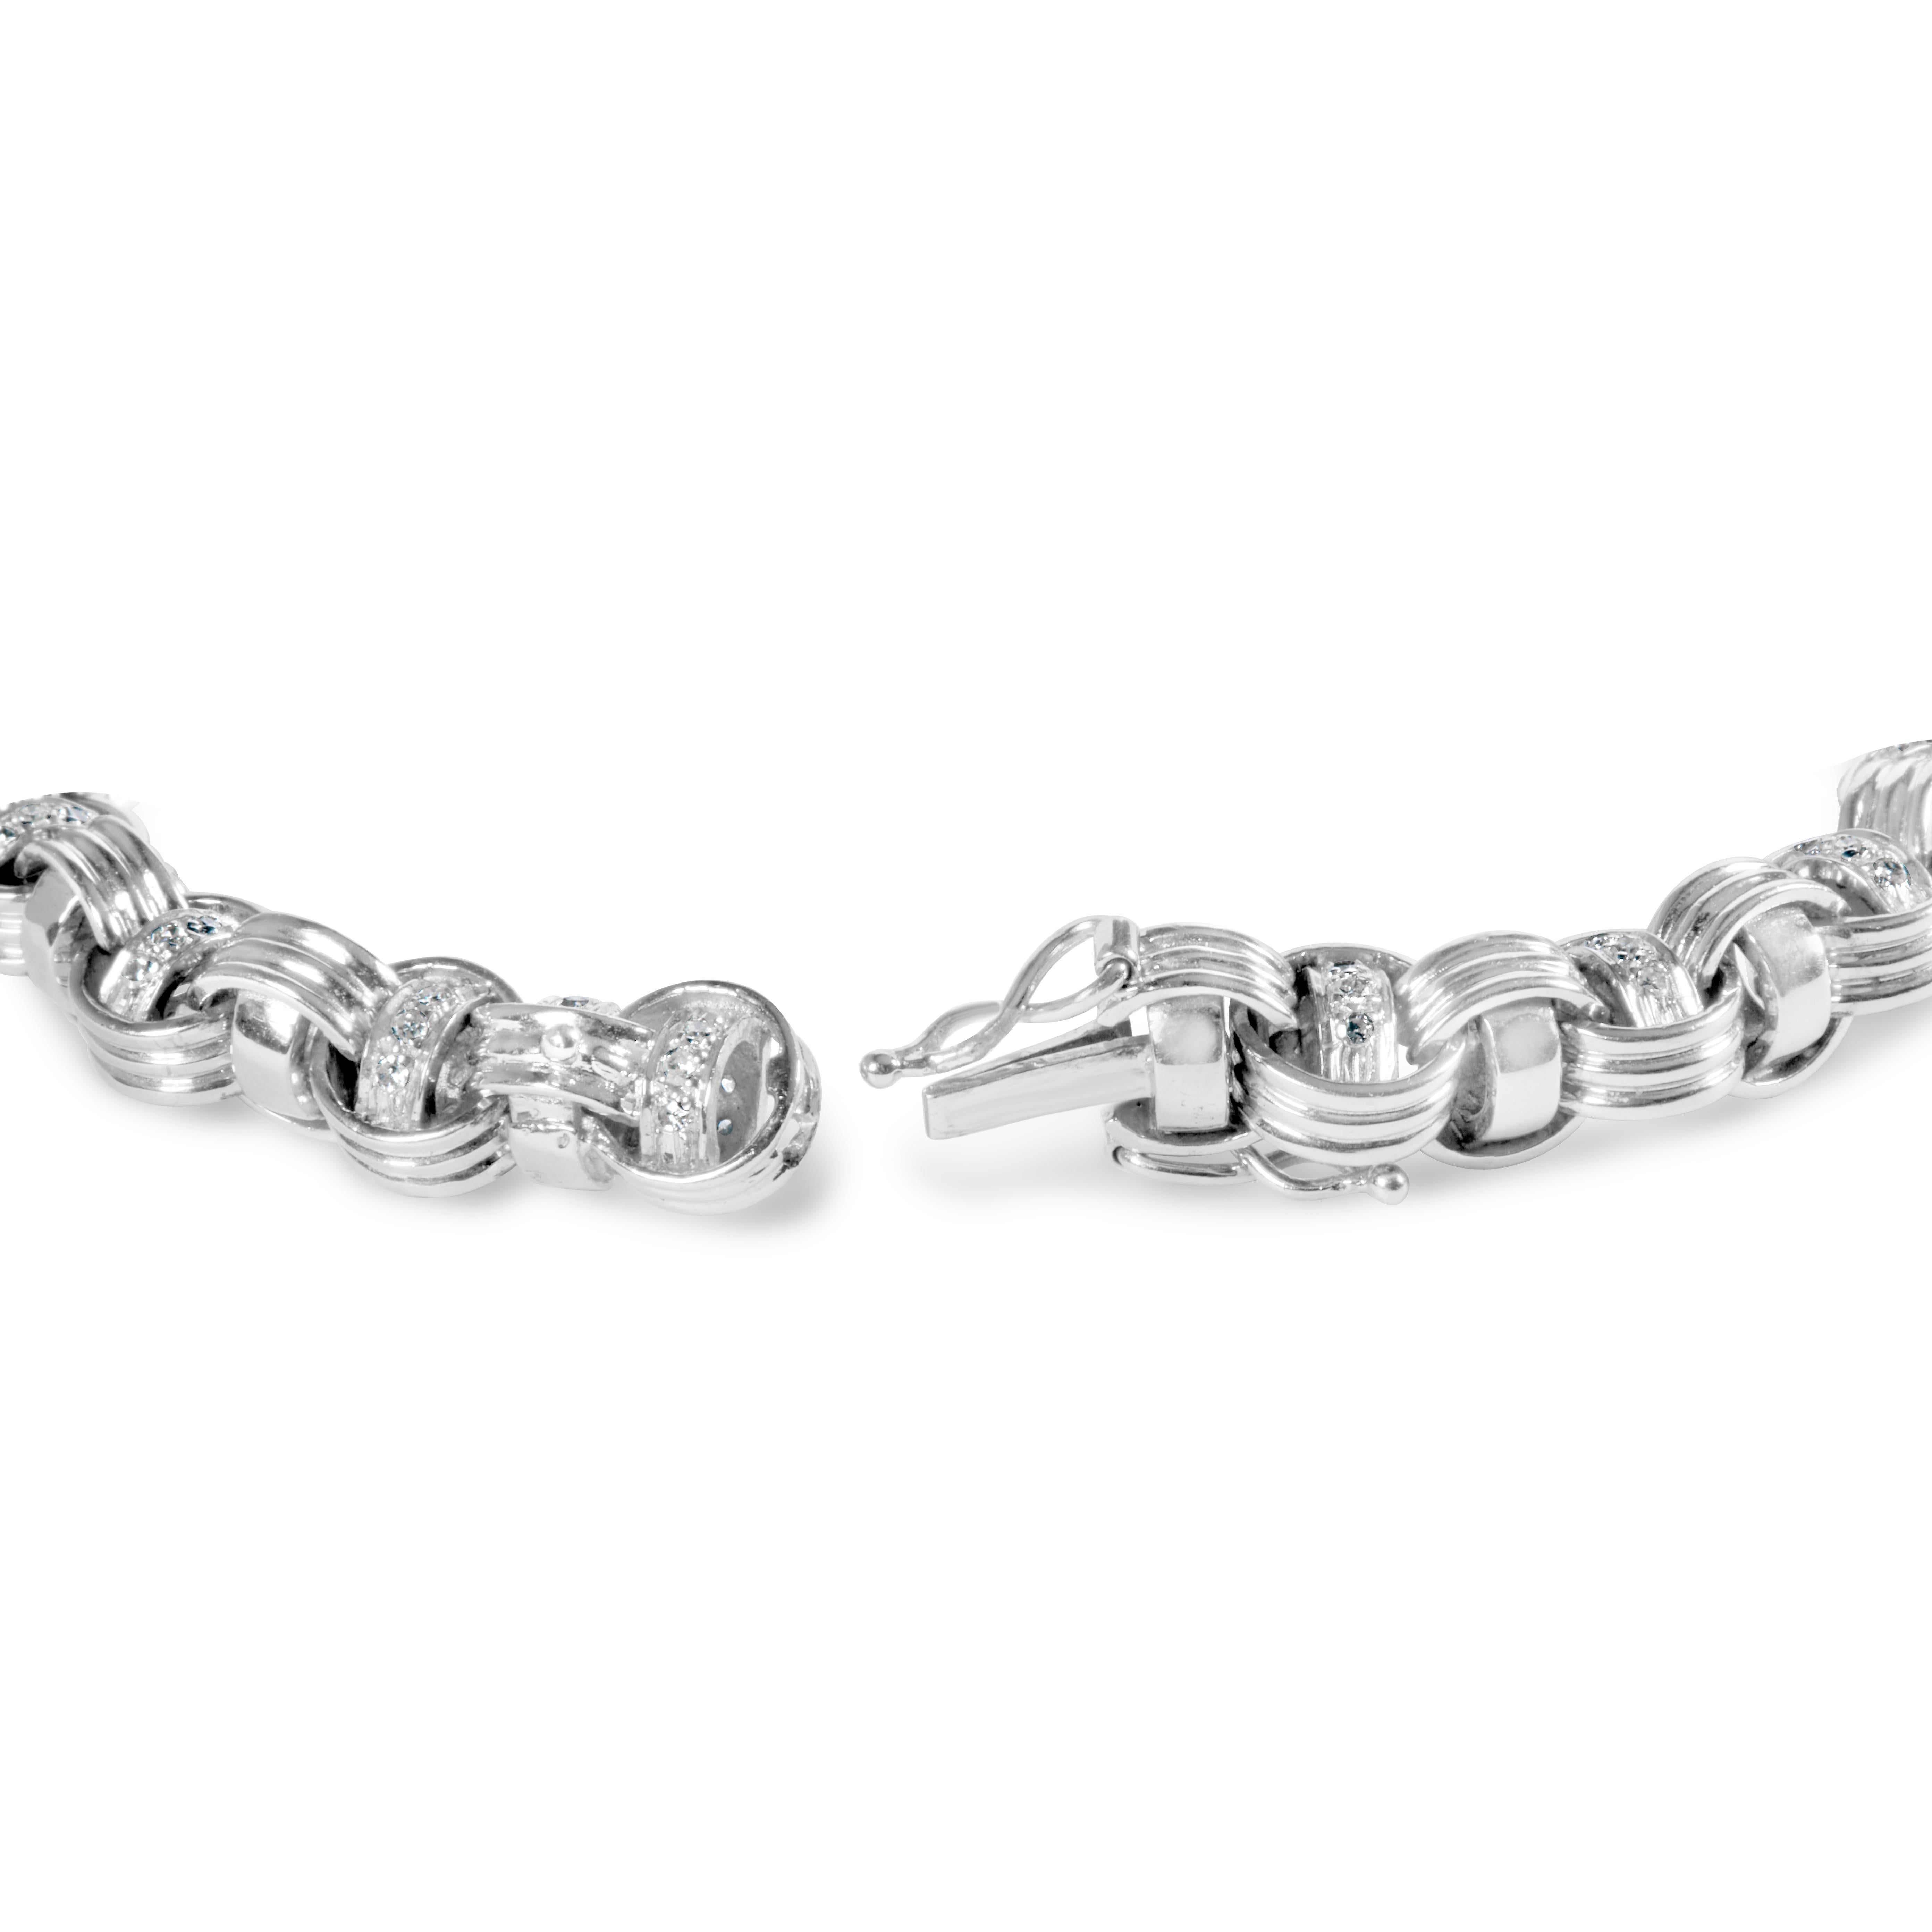 Offrez-vous le luxe ultime avec ce superbe bracelet byzantin en diamants. Fabriqué en or blanc lustré 14K, ce bracelet présente un design noué qui ajoute une touche de sophistication à n'importe quelle tenue. Avec 153 diamants ronds naturels